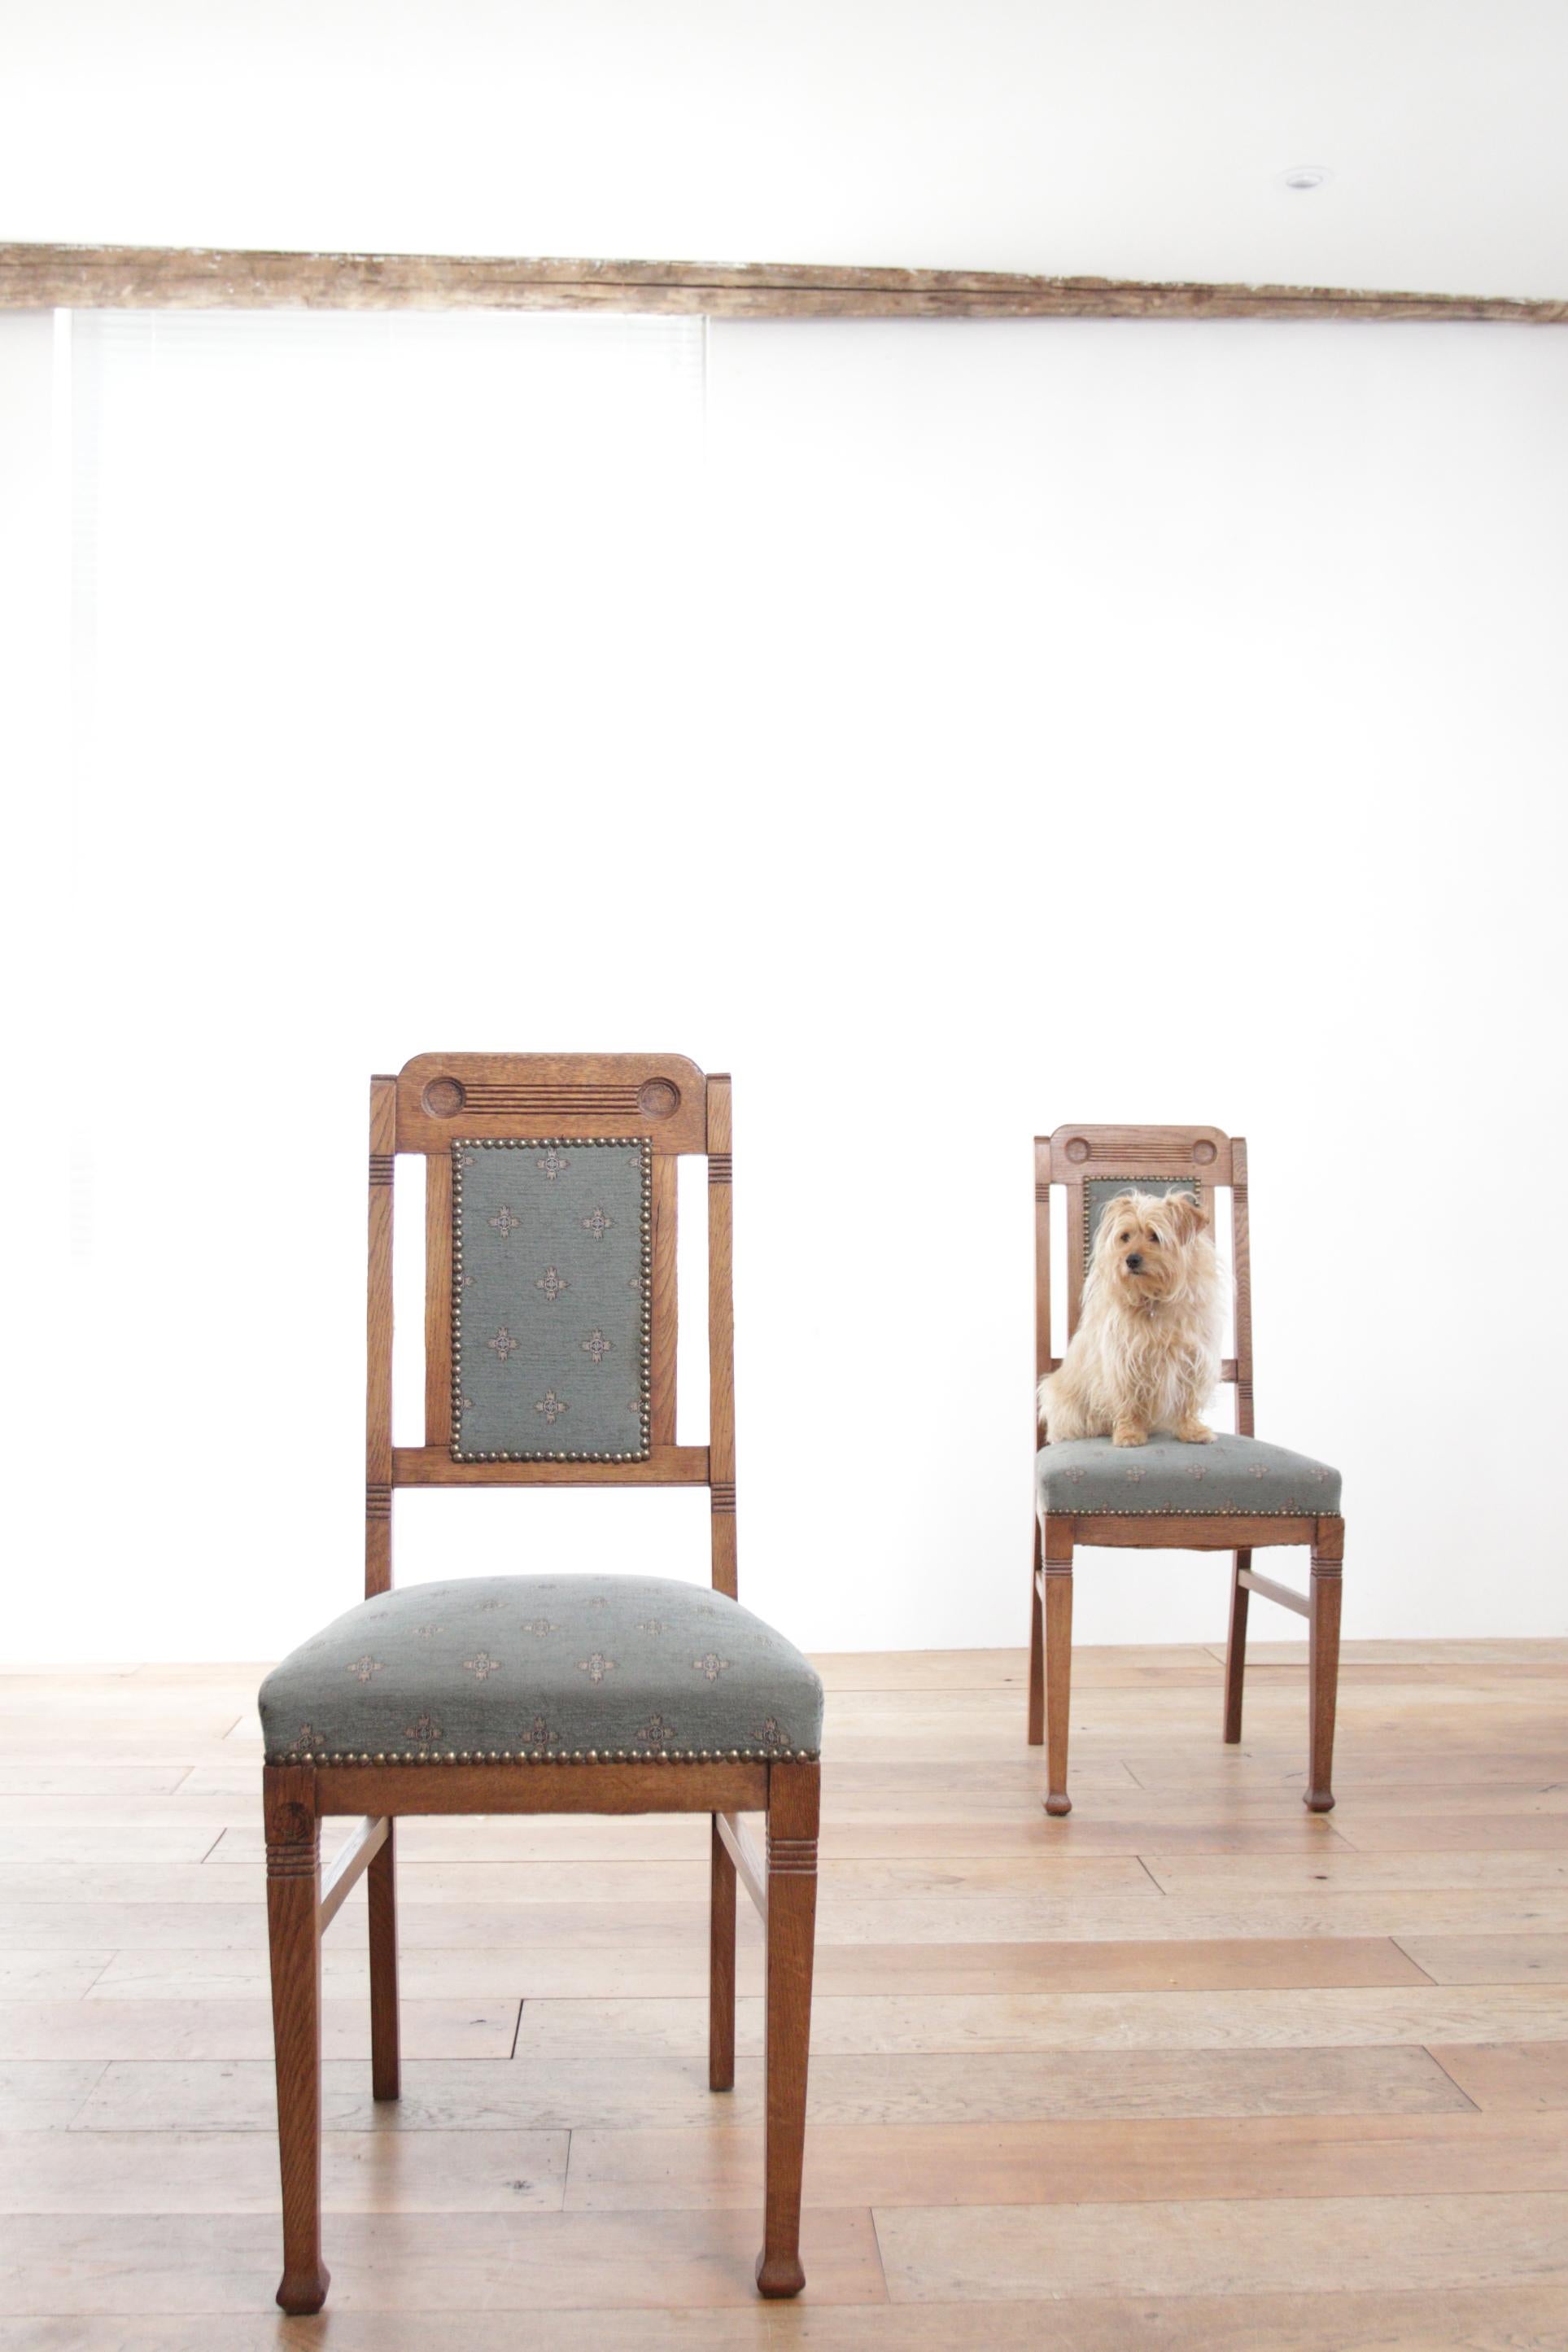 Zwei sehr schöne antike Beistellstühle, hergestellt in Frankreich um die 1930er Jahre.
Diese beiden Beistellstühle sind exquisite Beispiele für den französischen Art-déco-Stil, der in den 1920er und 1930er Jahren seine Blütezeit erlebte. Die Stühle